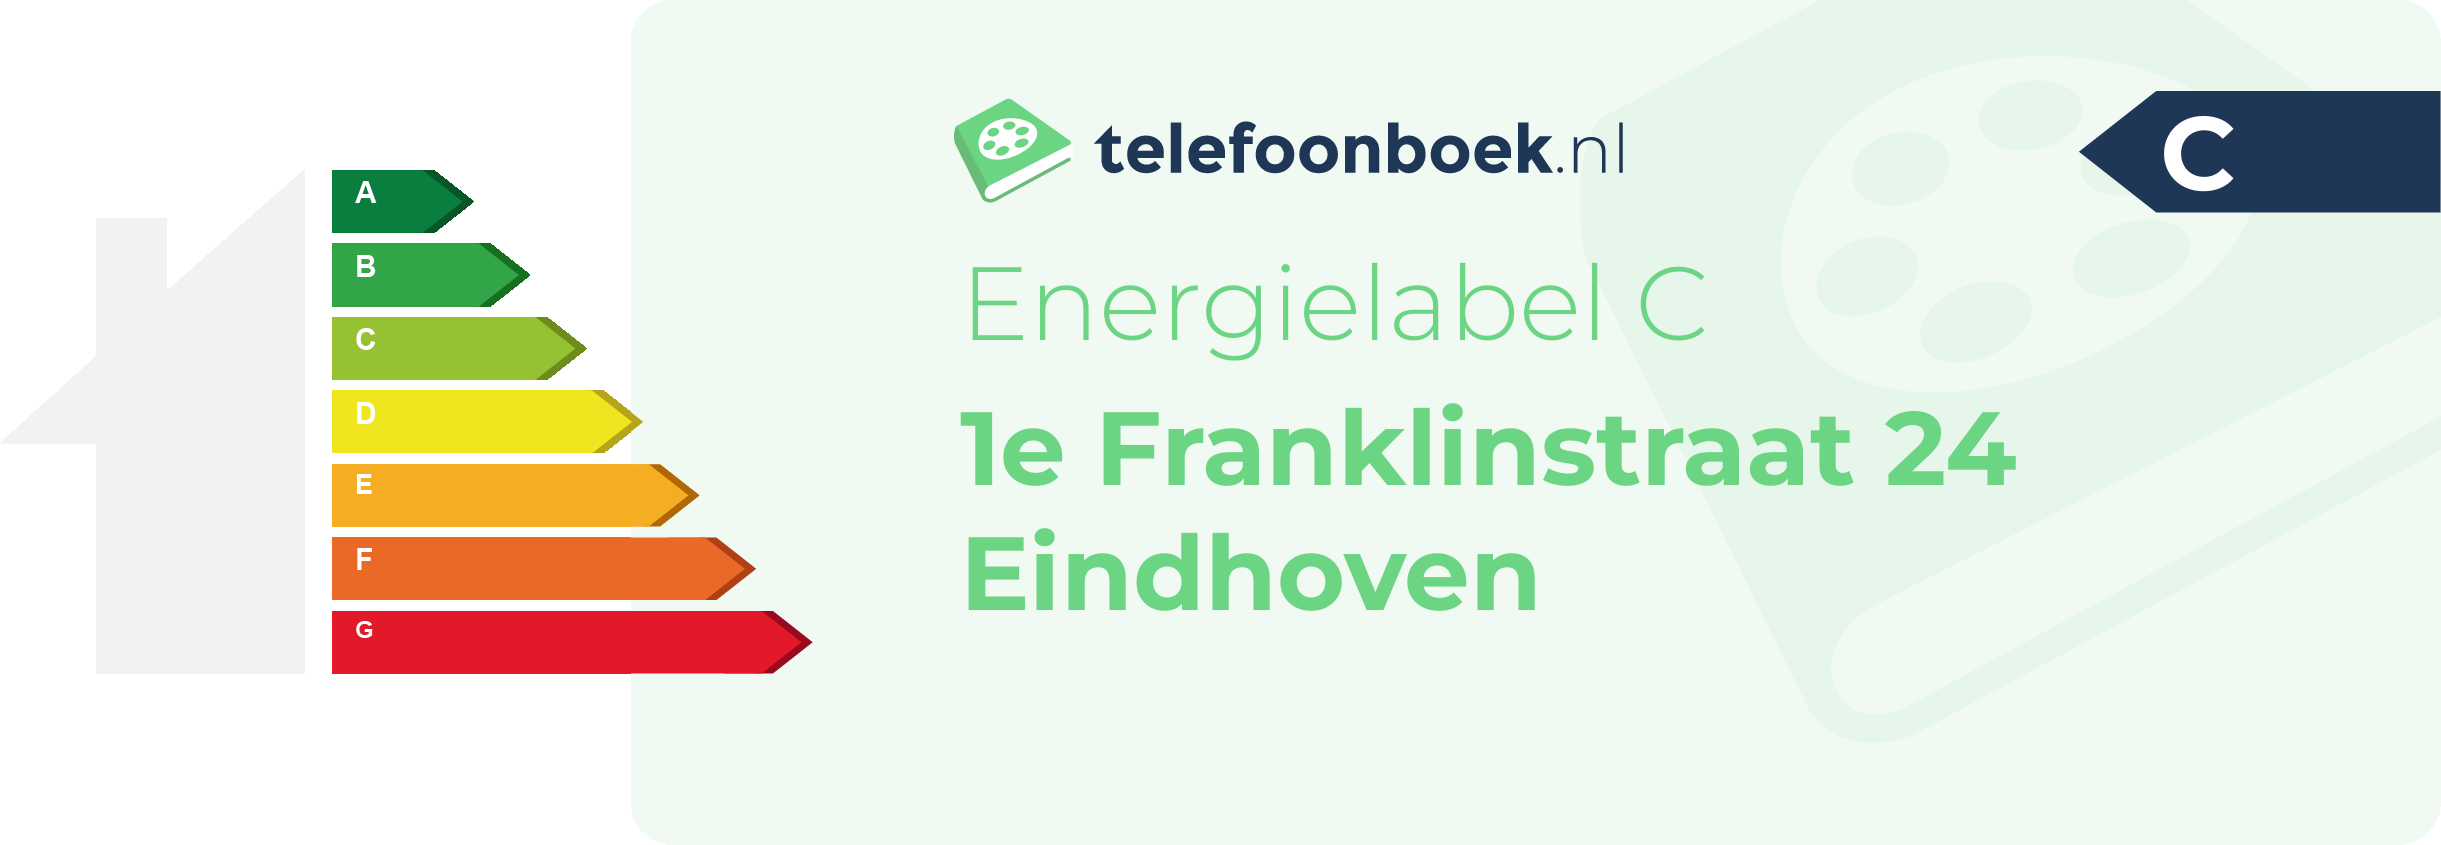 Energielabel 1e Franklinstraat 24 Eindhoven